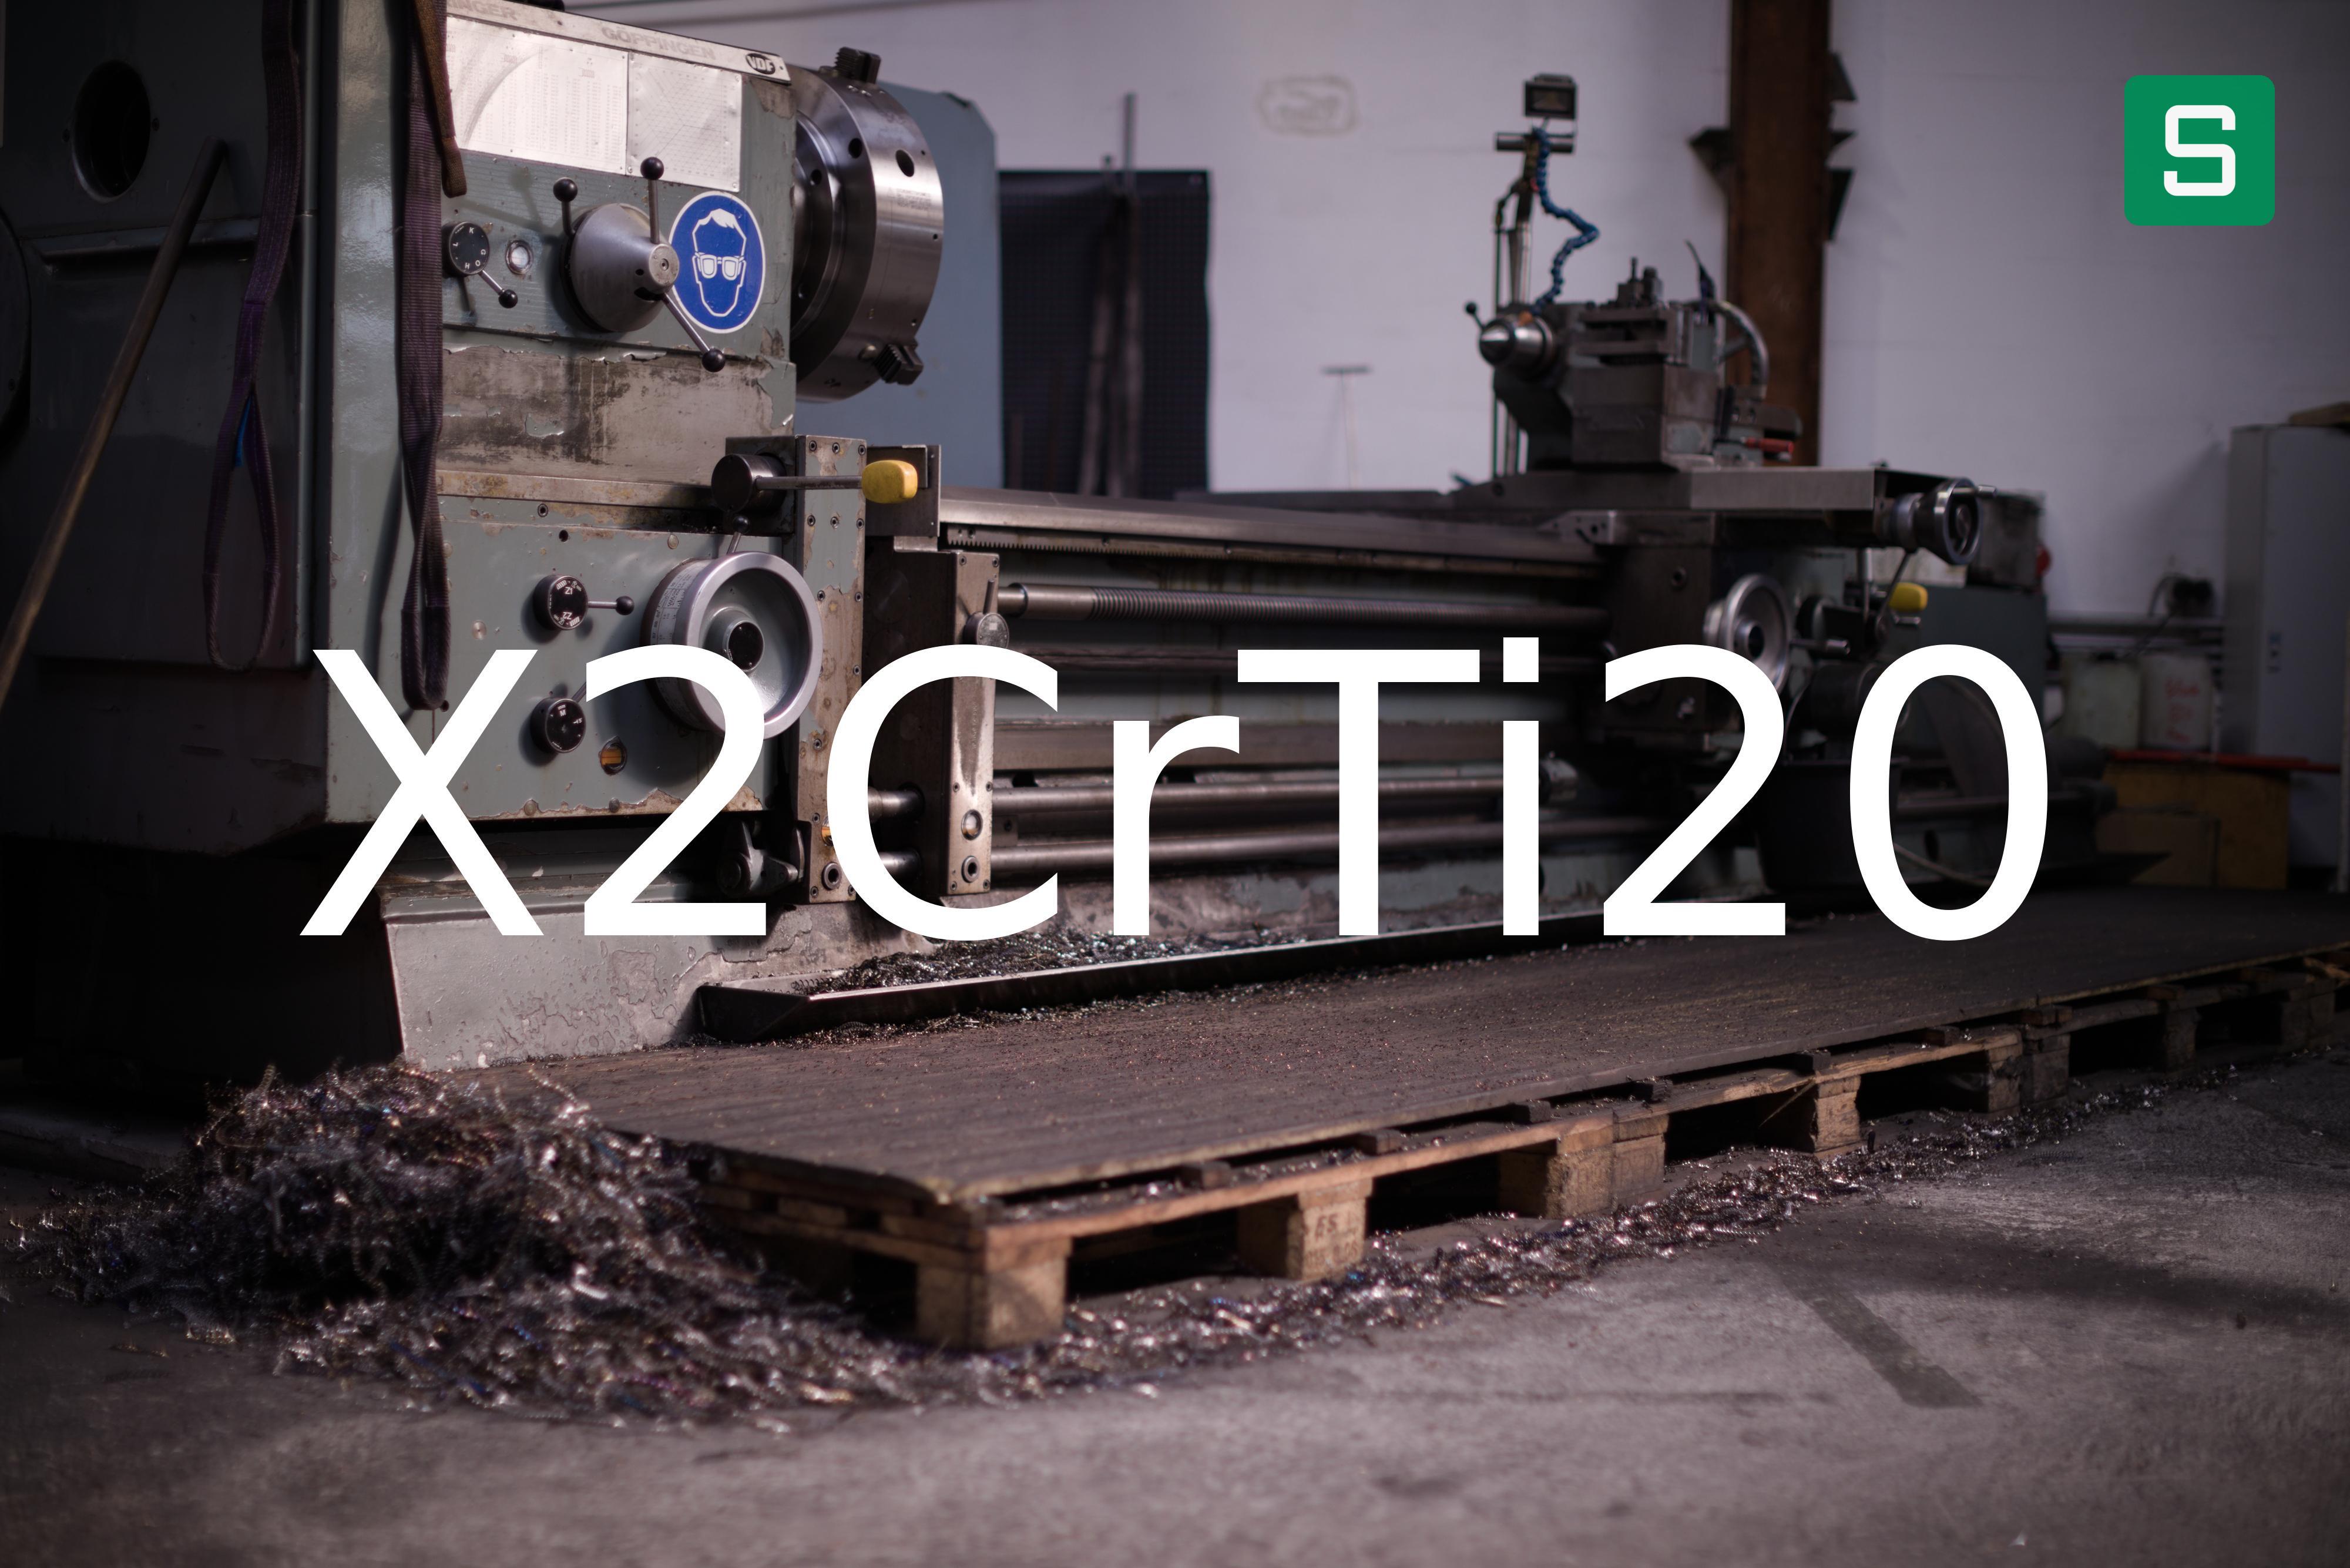 Steel Material: X2CrTi20